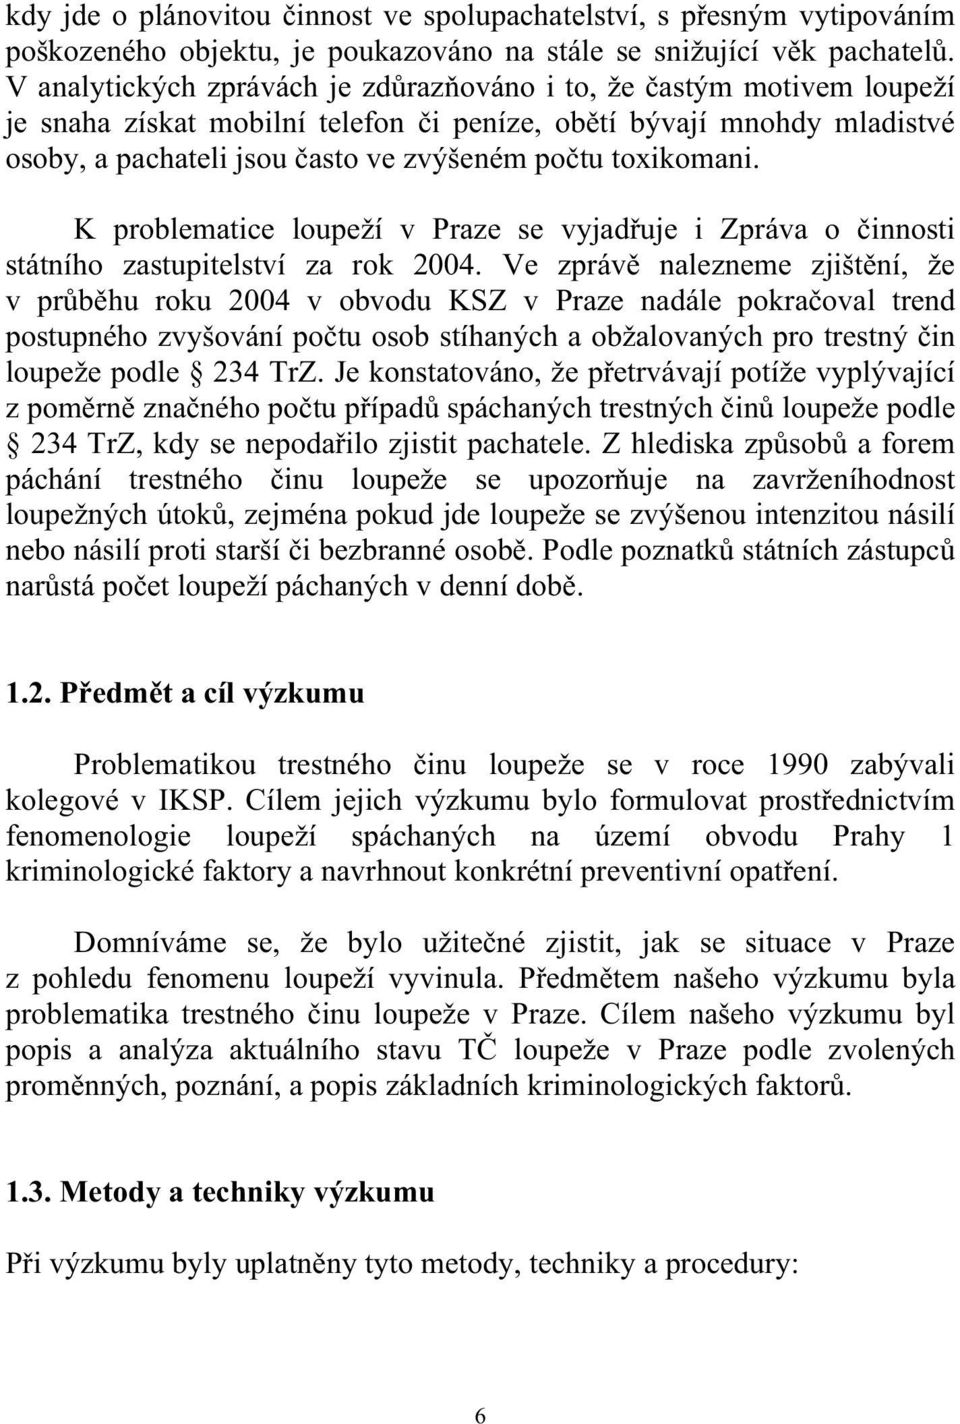 toxikomani. K problematice loupeží v Praze se vyjadřuje i Zpráva o činnosti státního zastupitelství za rok 2004.